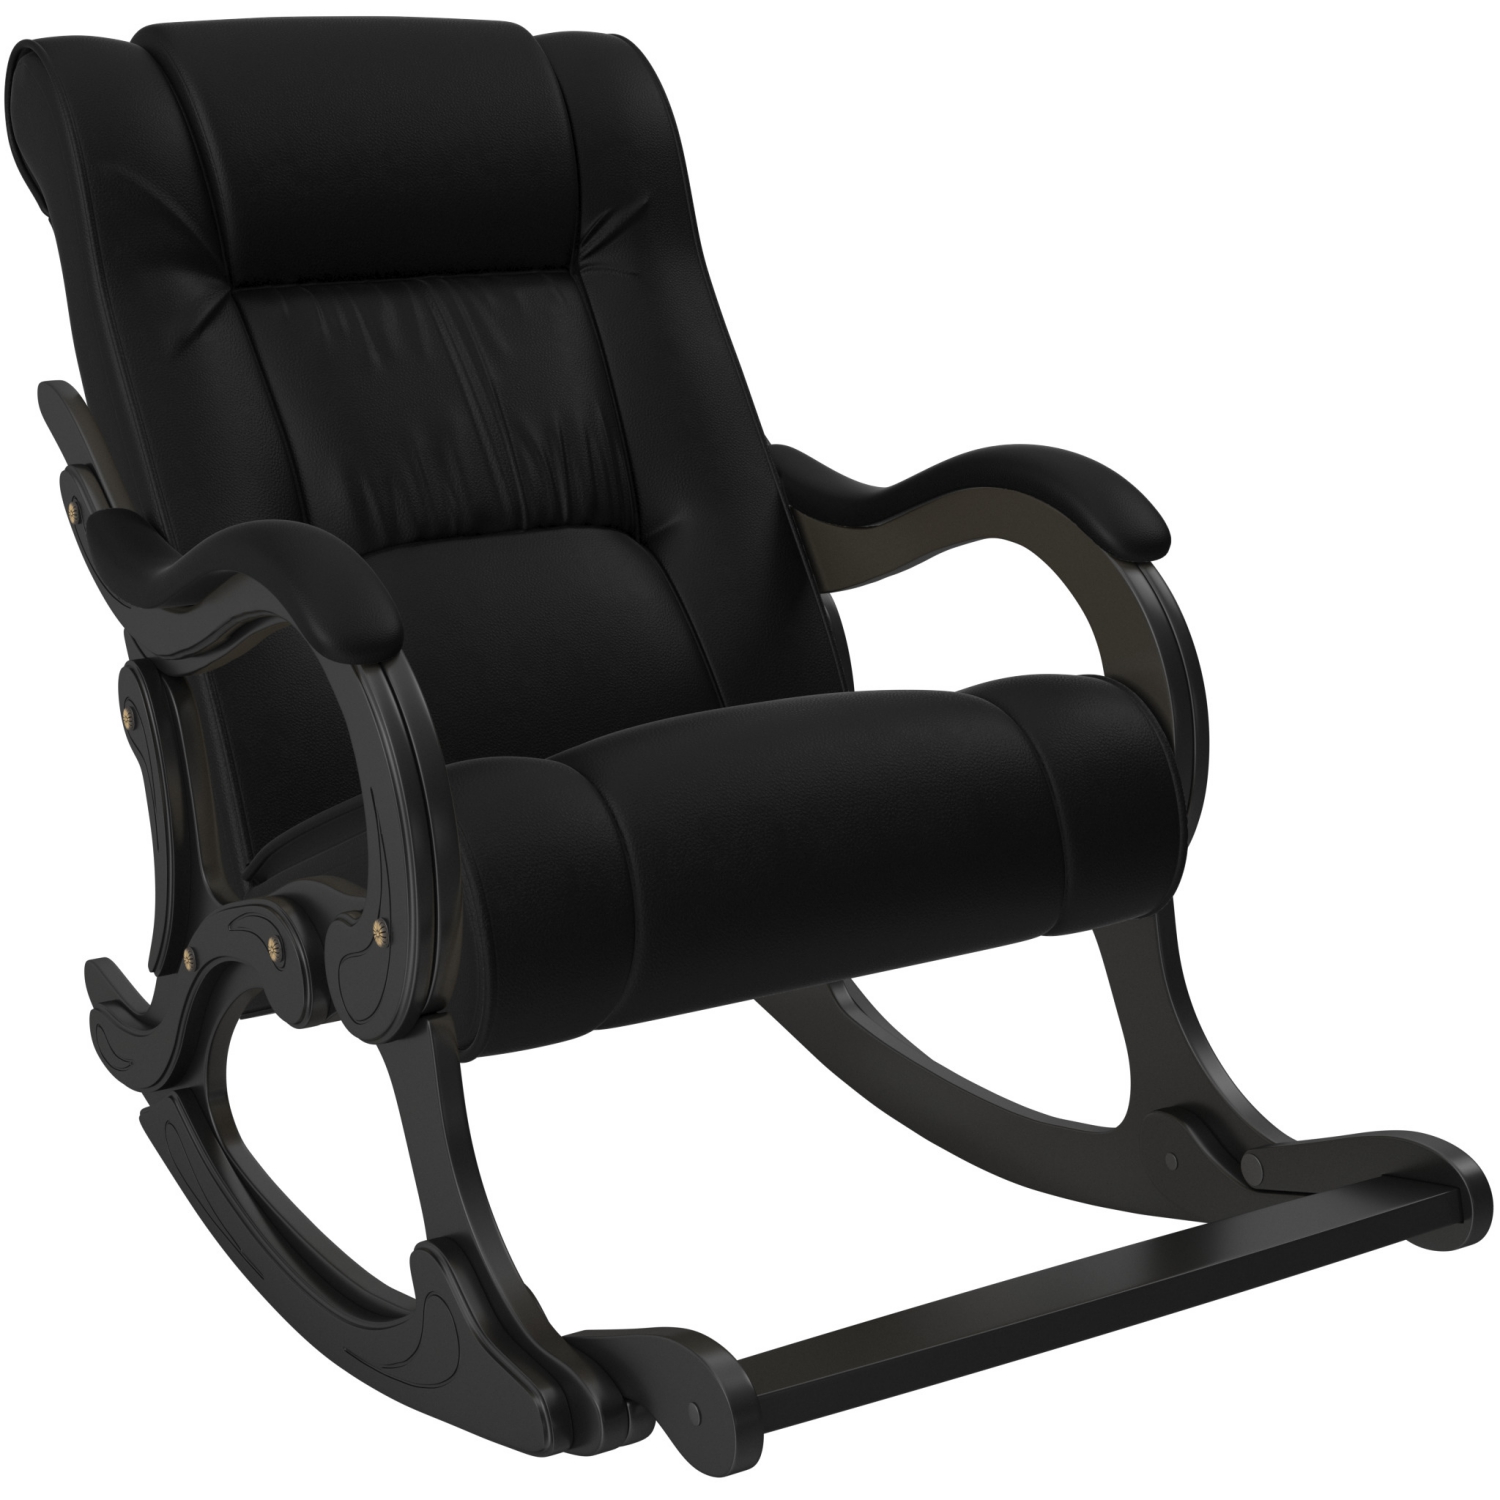 Кресло-качалка с подножкой модель 77 фото 1